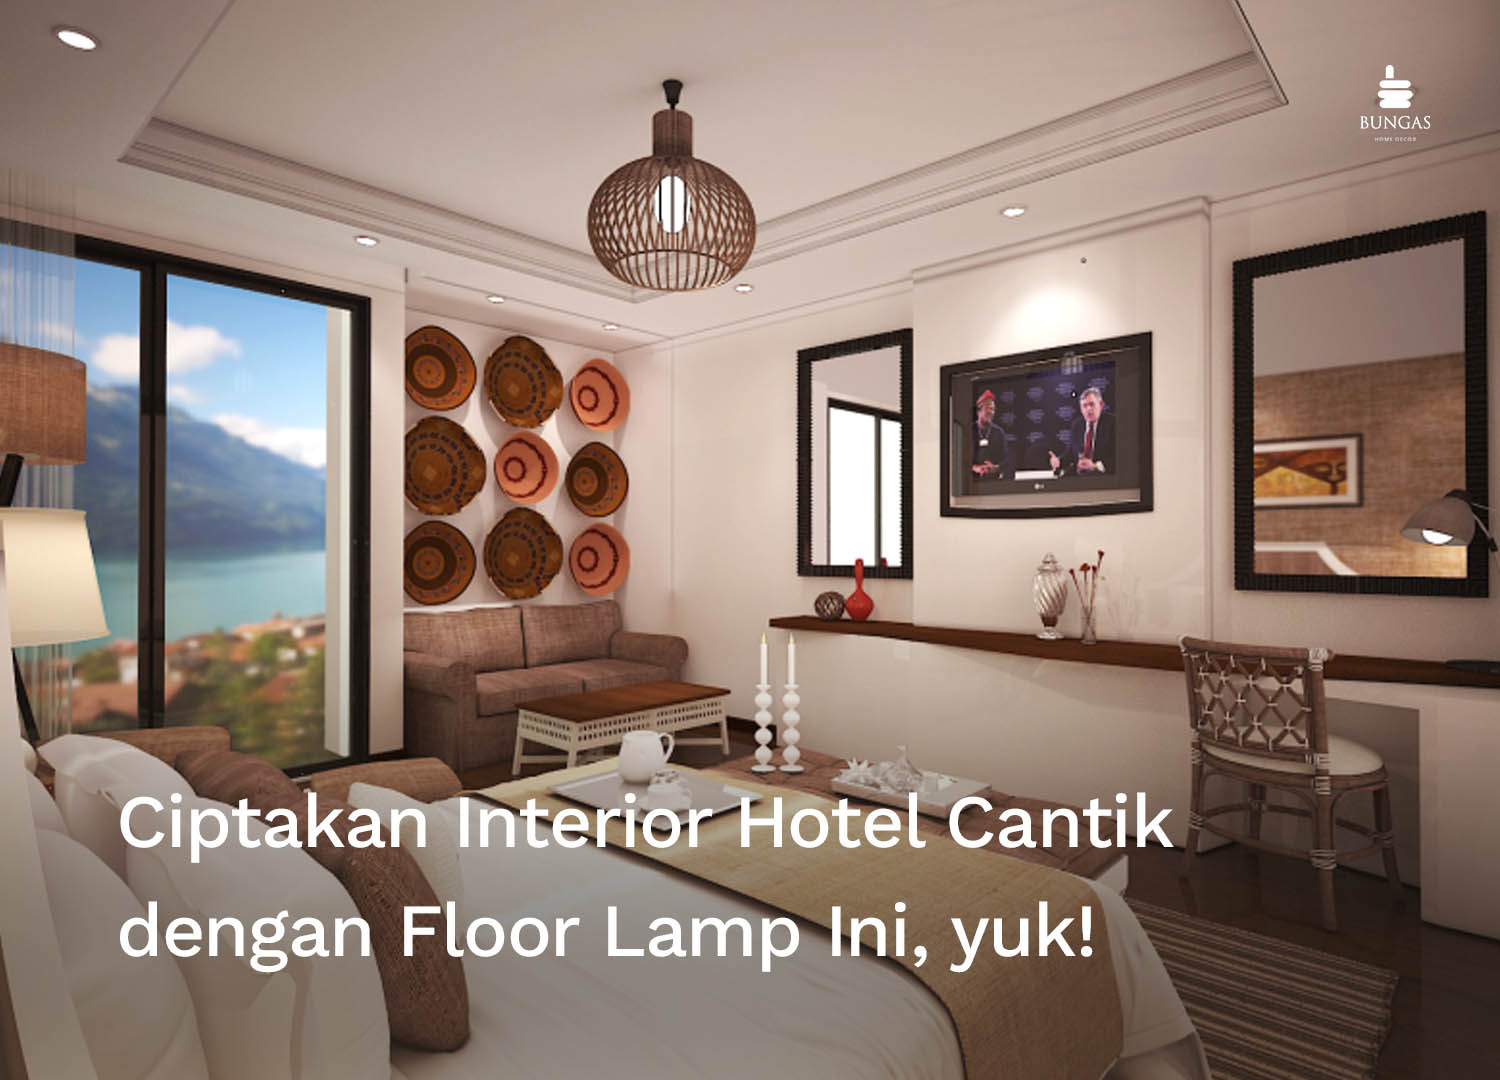 You are currently viewing Ciptakan Interior Hotel Cantik dengan Floor Lamp Ini, yuk!